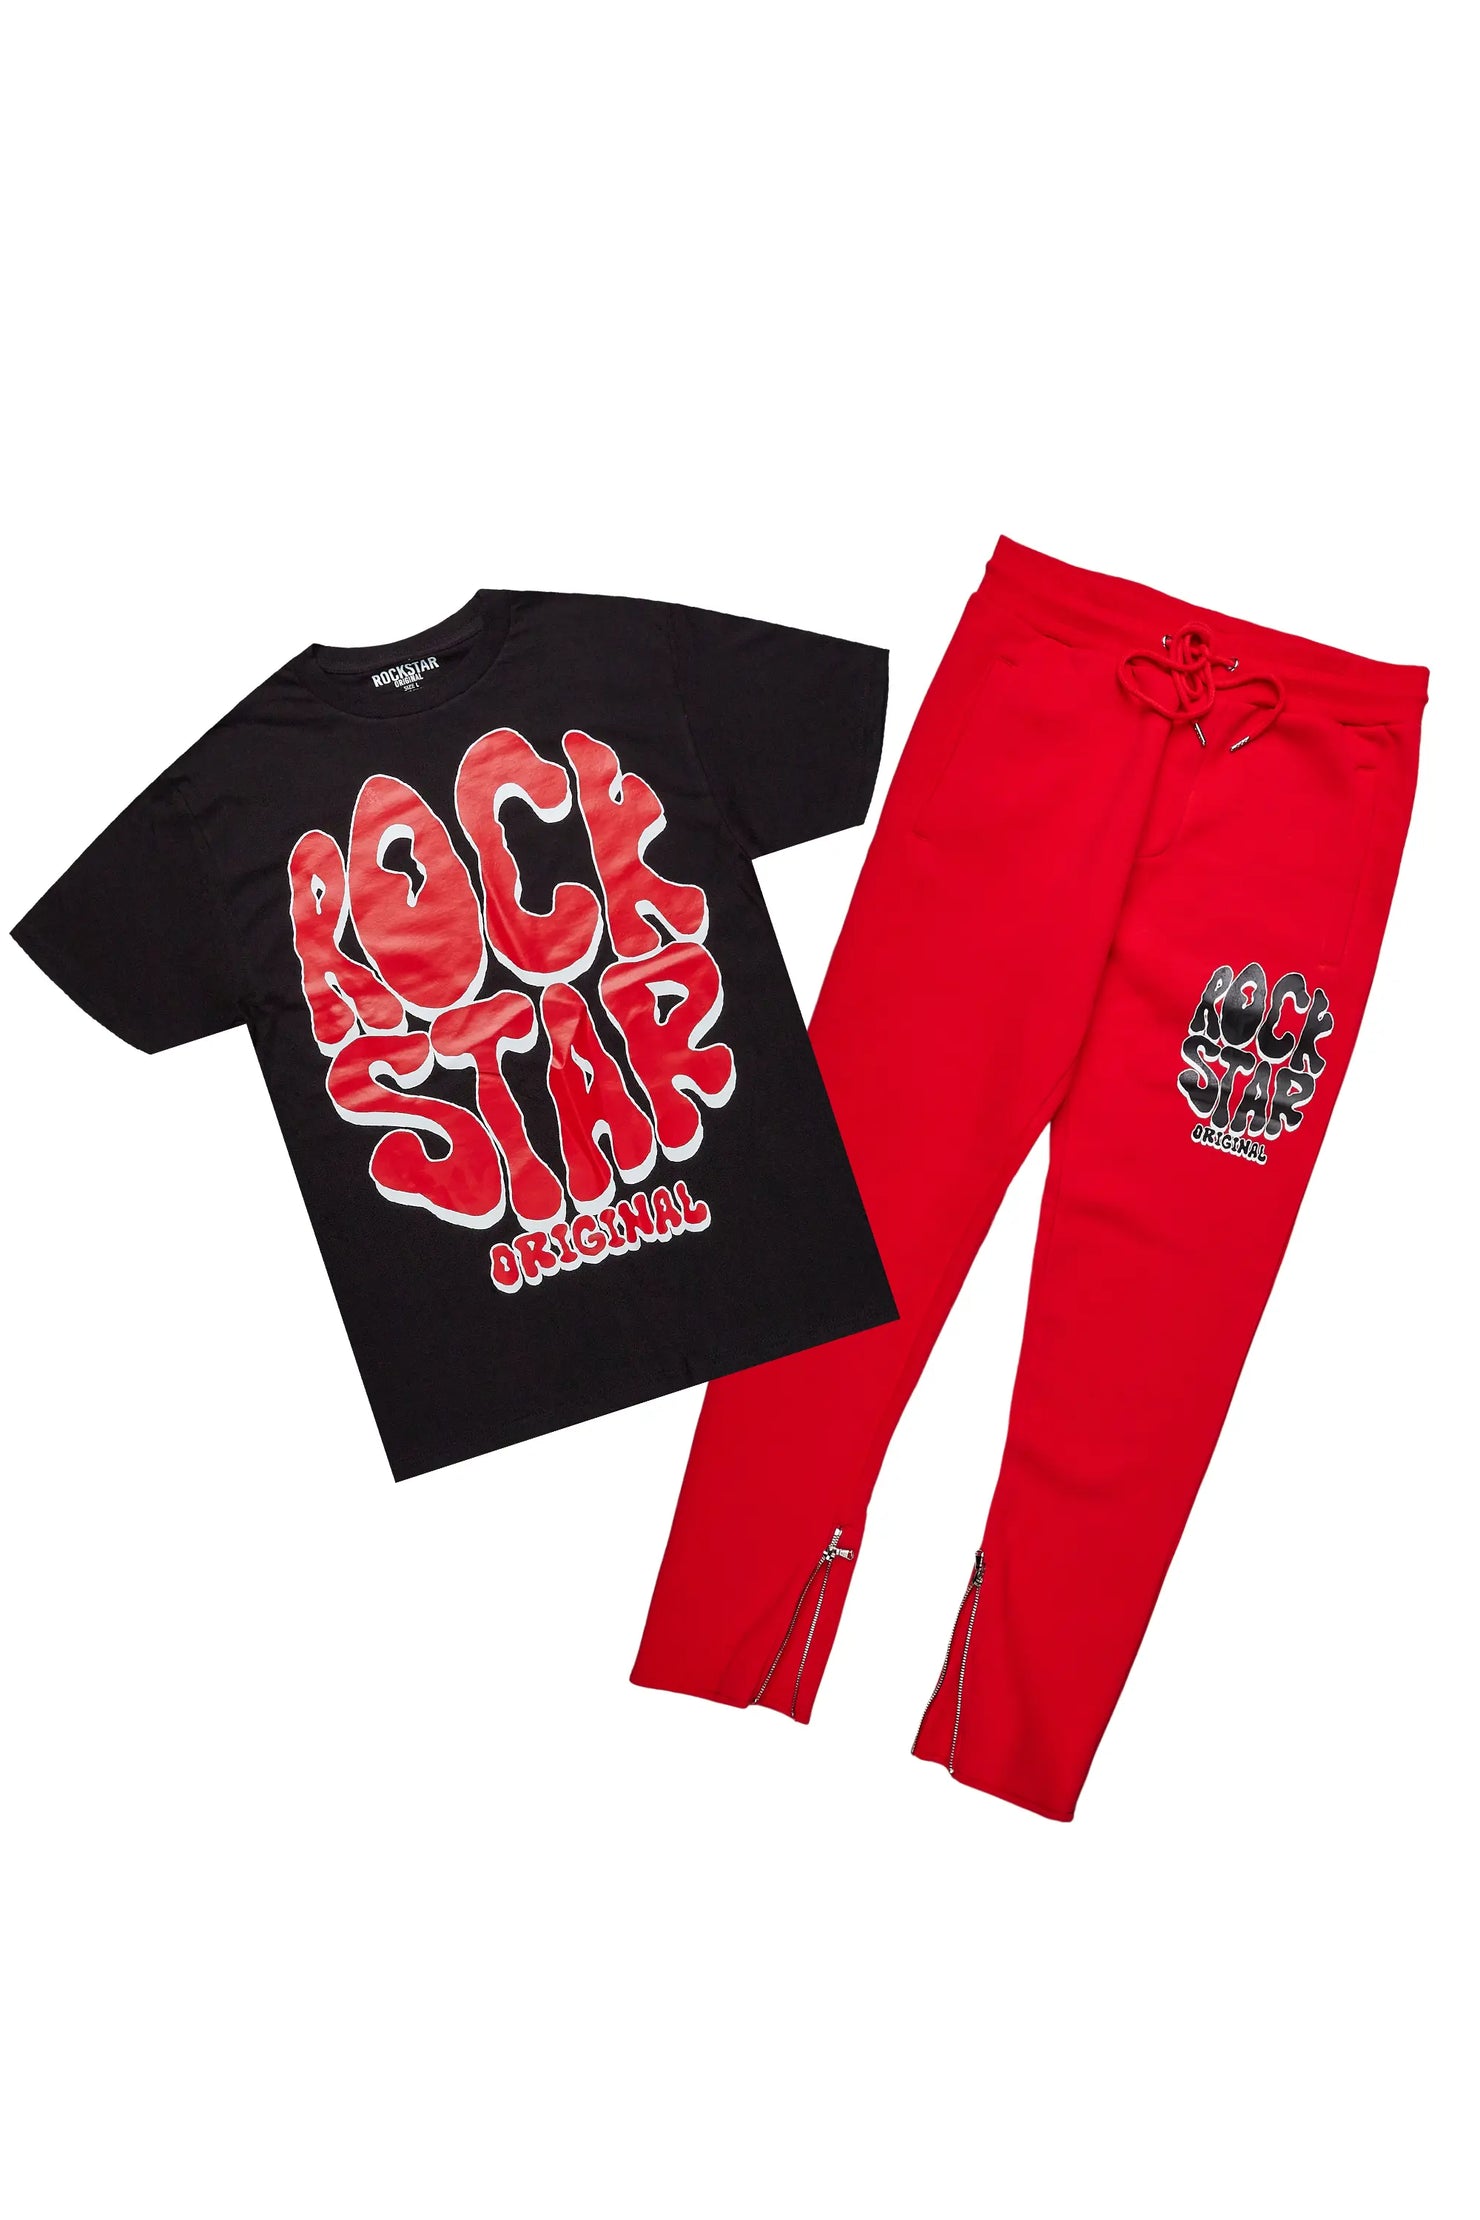 Warblen Black/Red T-Shirt Slim Fit Track Set